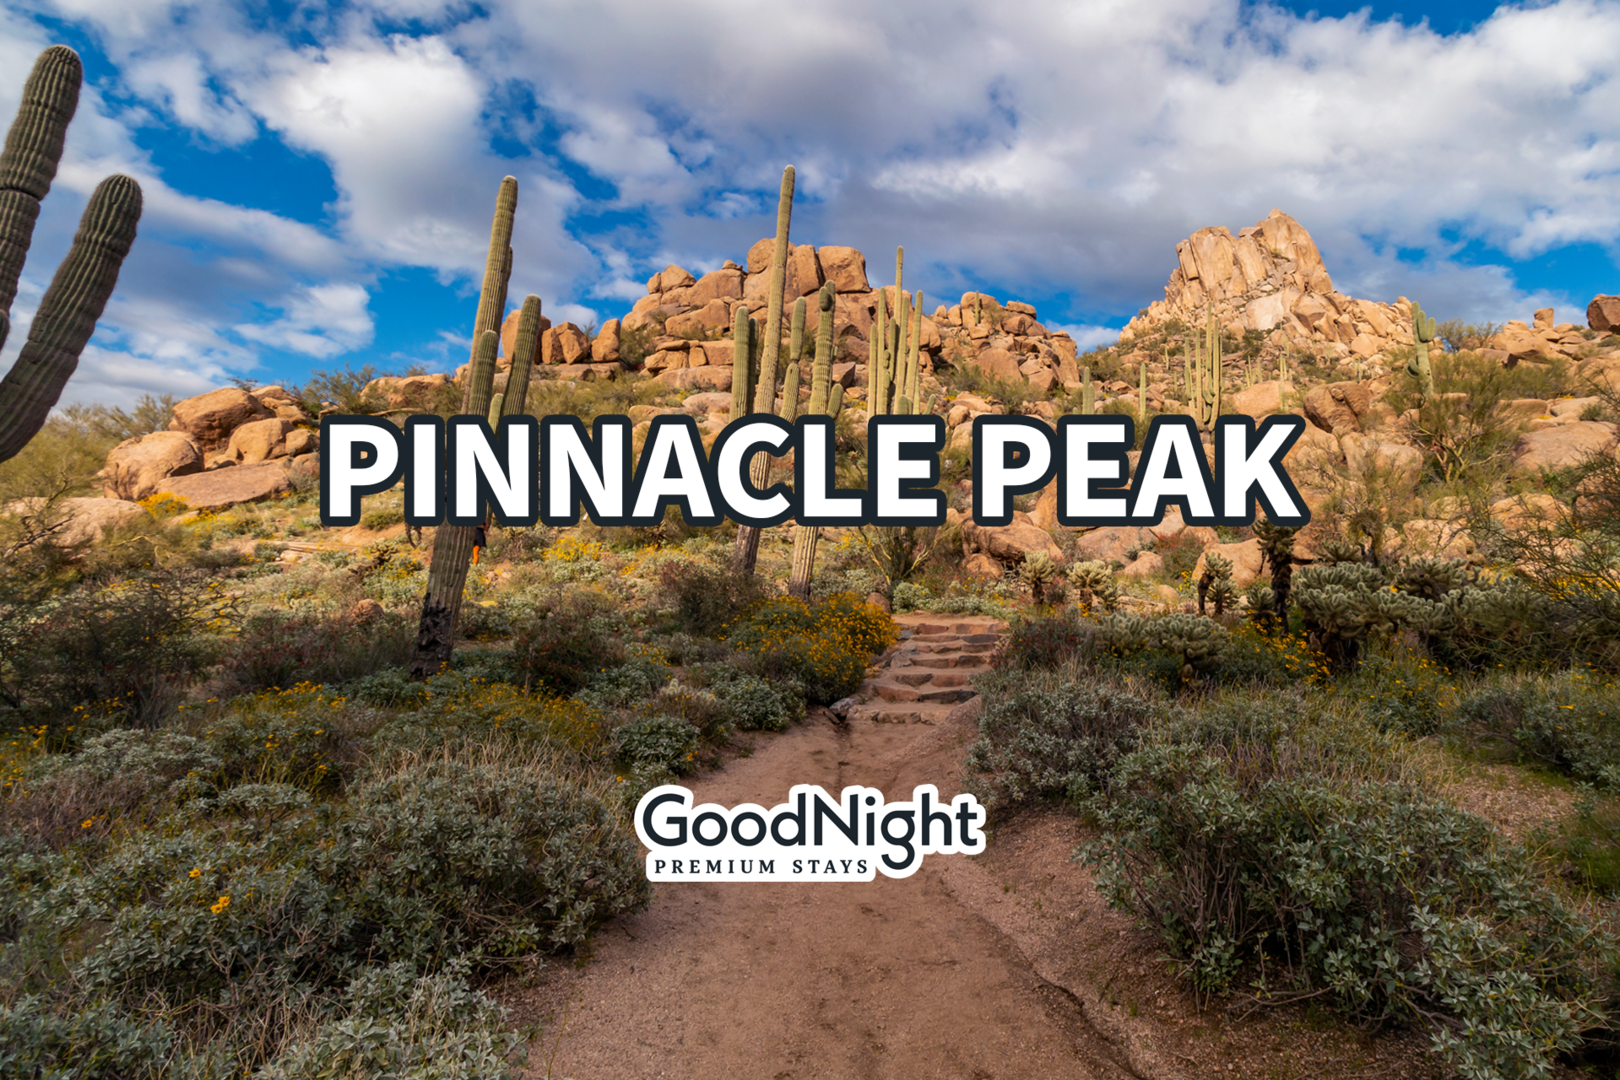 18 mins: Pinnacle Peak